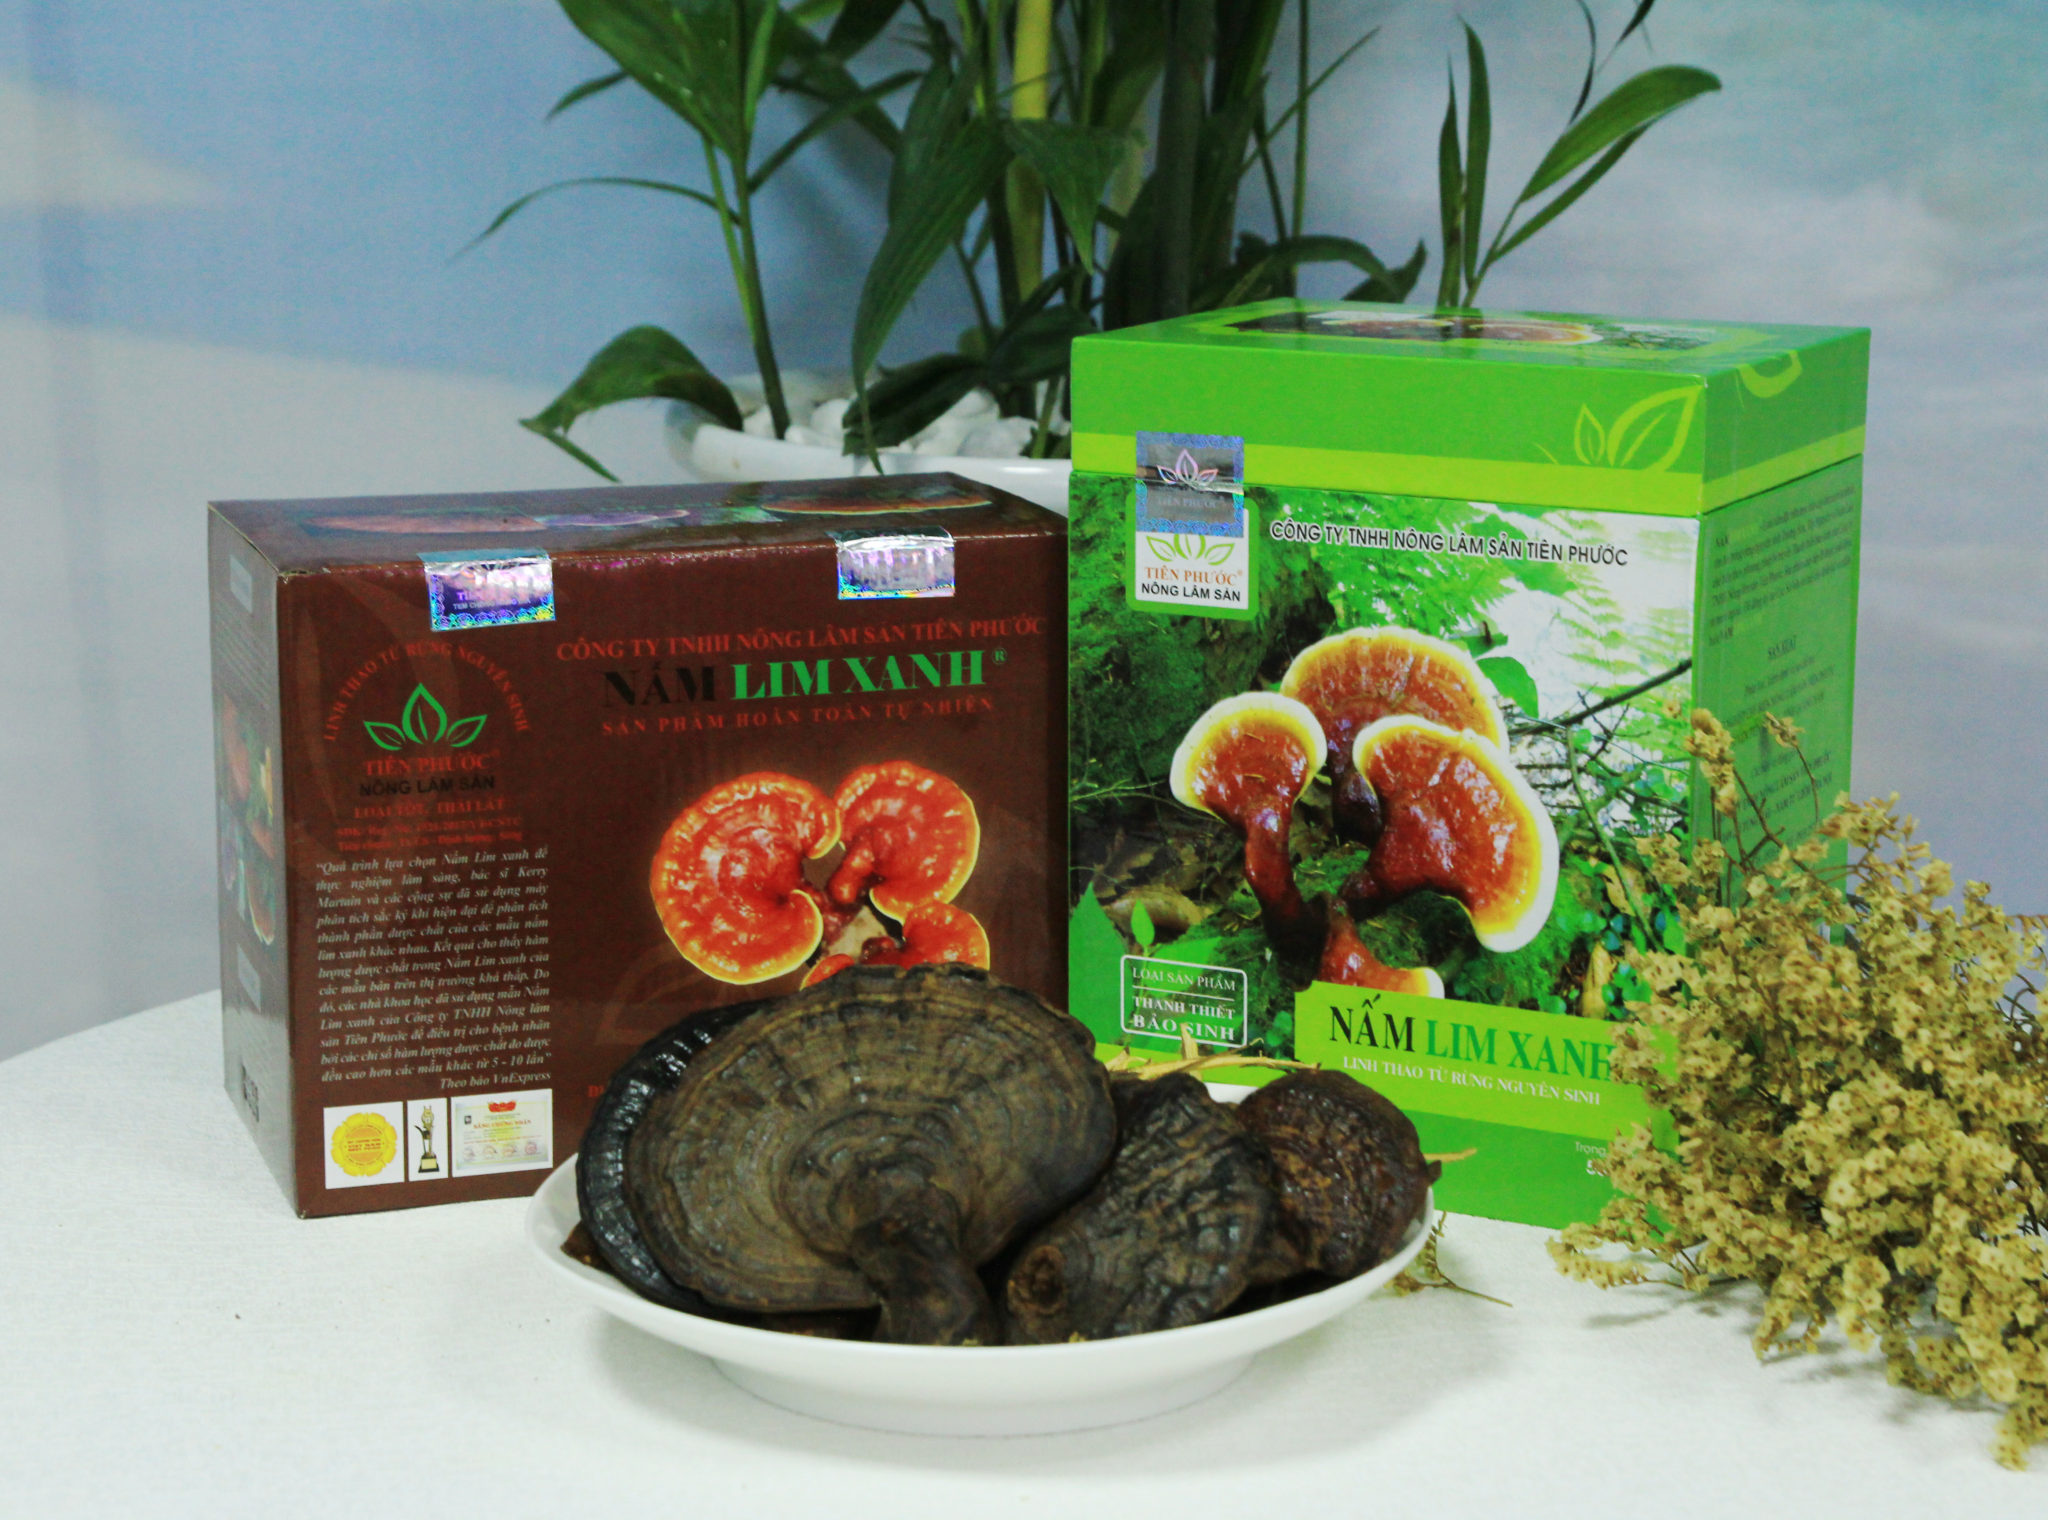 Đại lý bán nấm lim xanh tại Tiền Giang cung cấp sản phẩm nấm lim xanh rừng tự nhiên